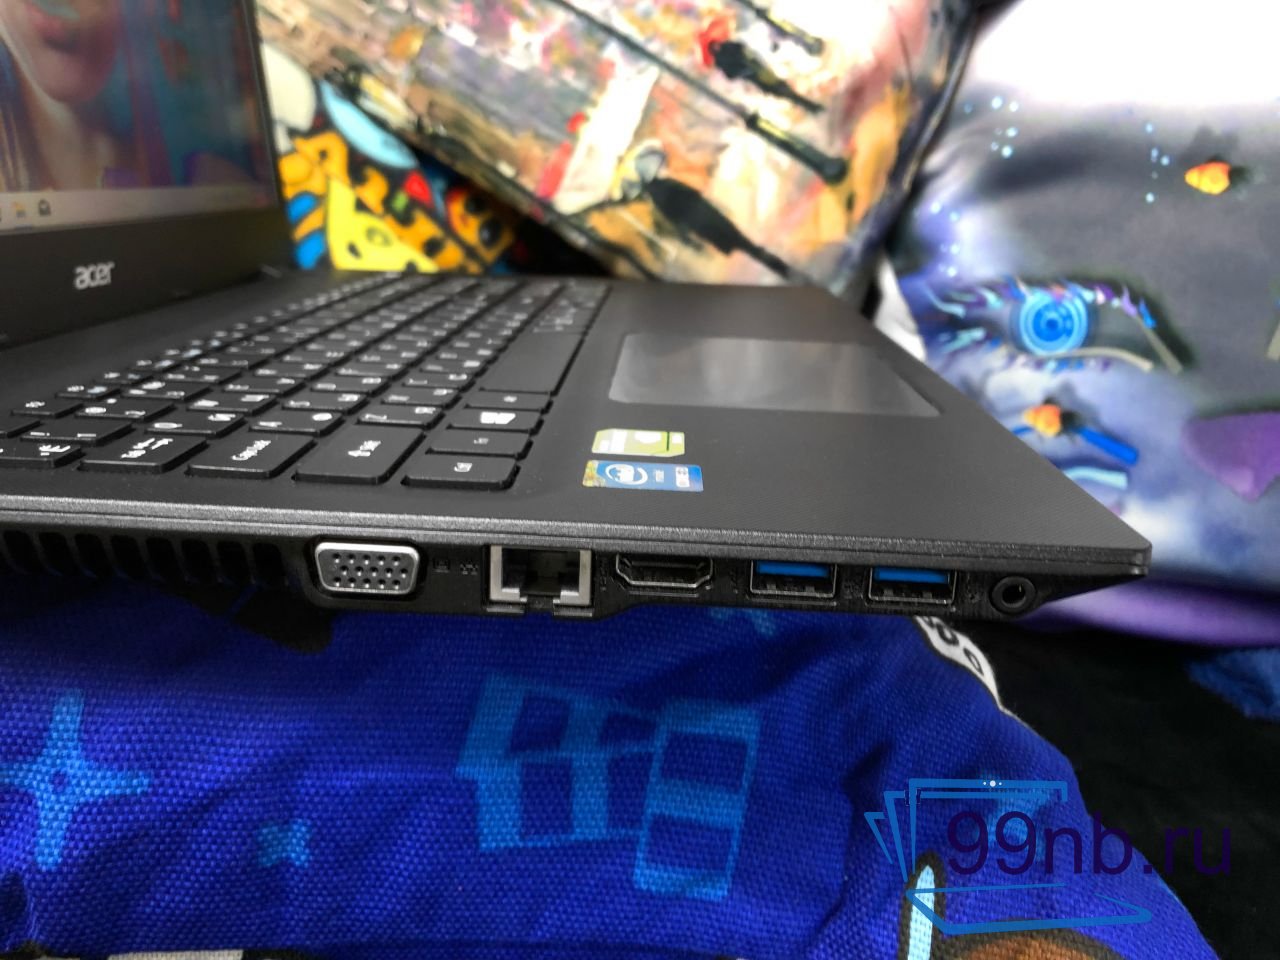  Ноутбук Acer Extensa для работы, учёбы и игр